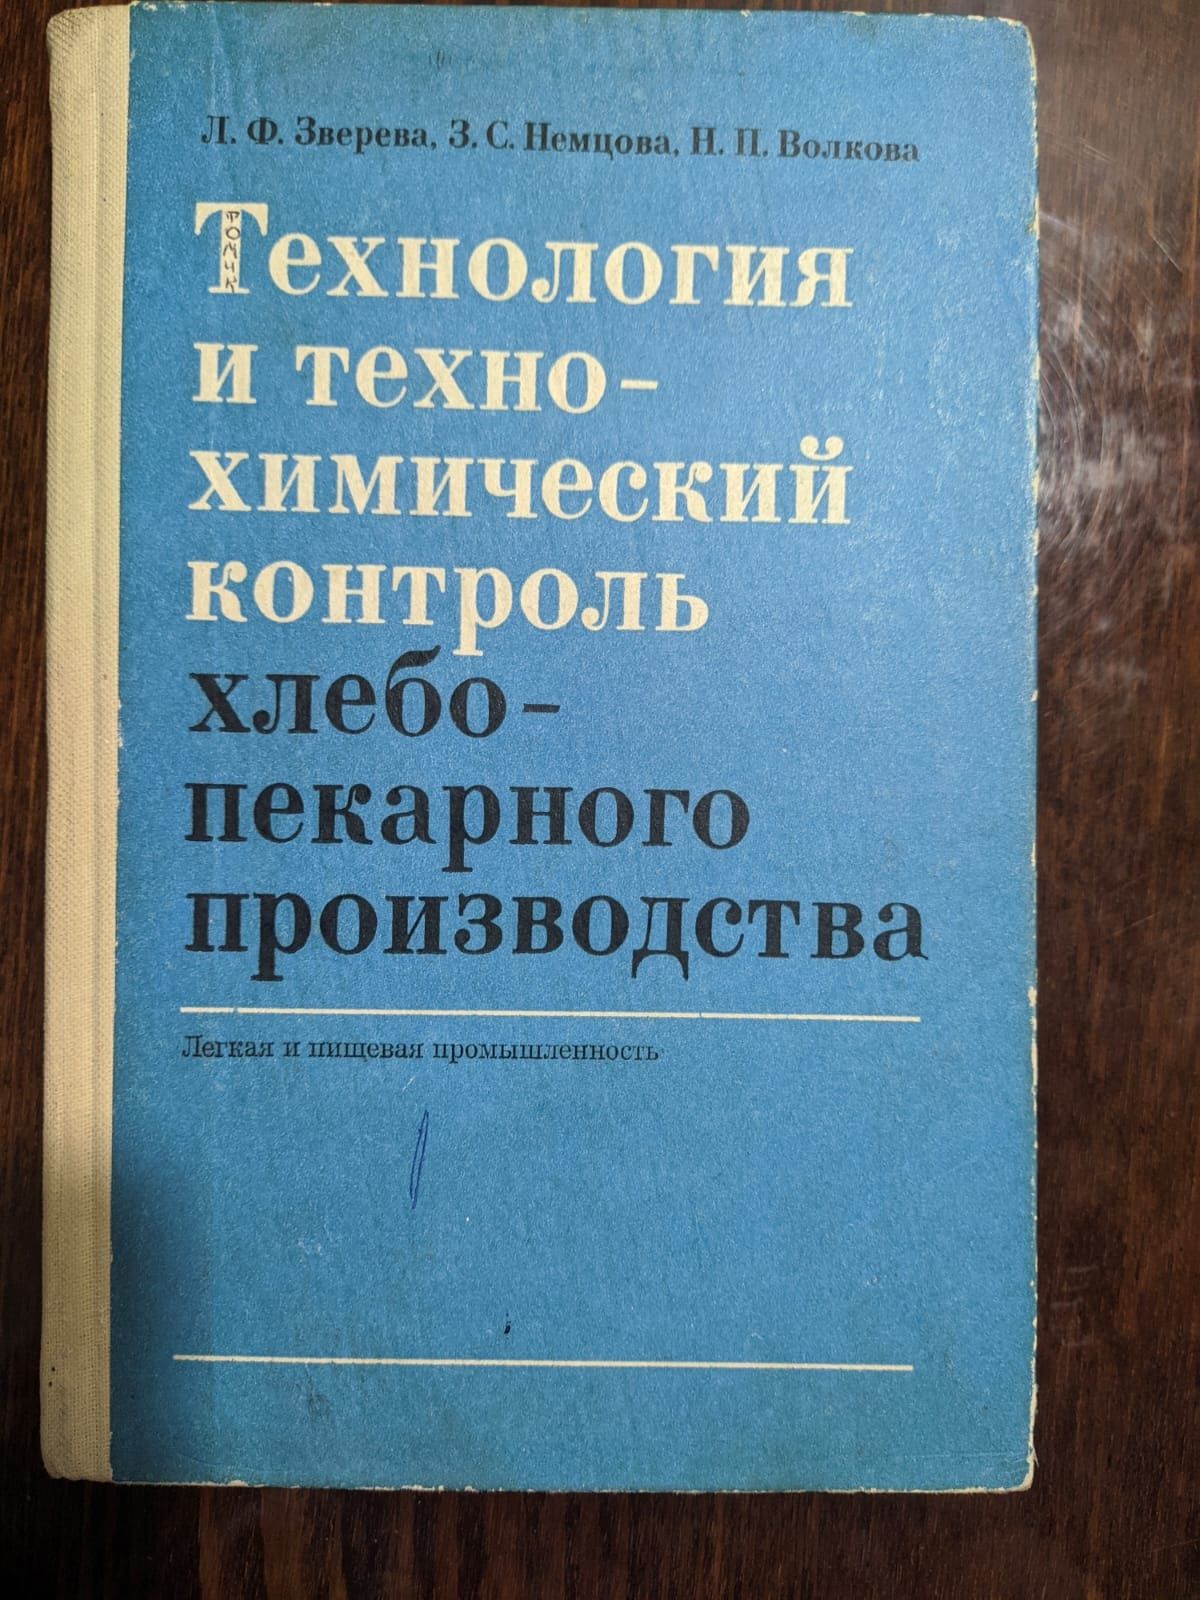 Продам книги по хлебопечению СССР